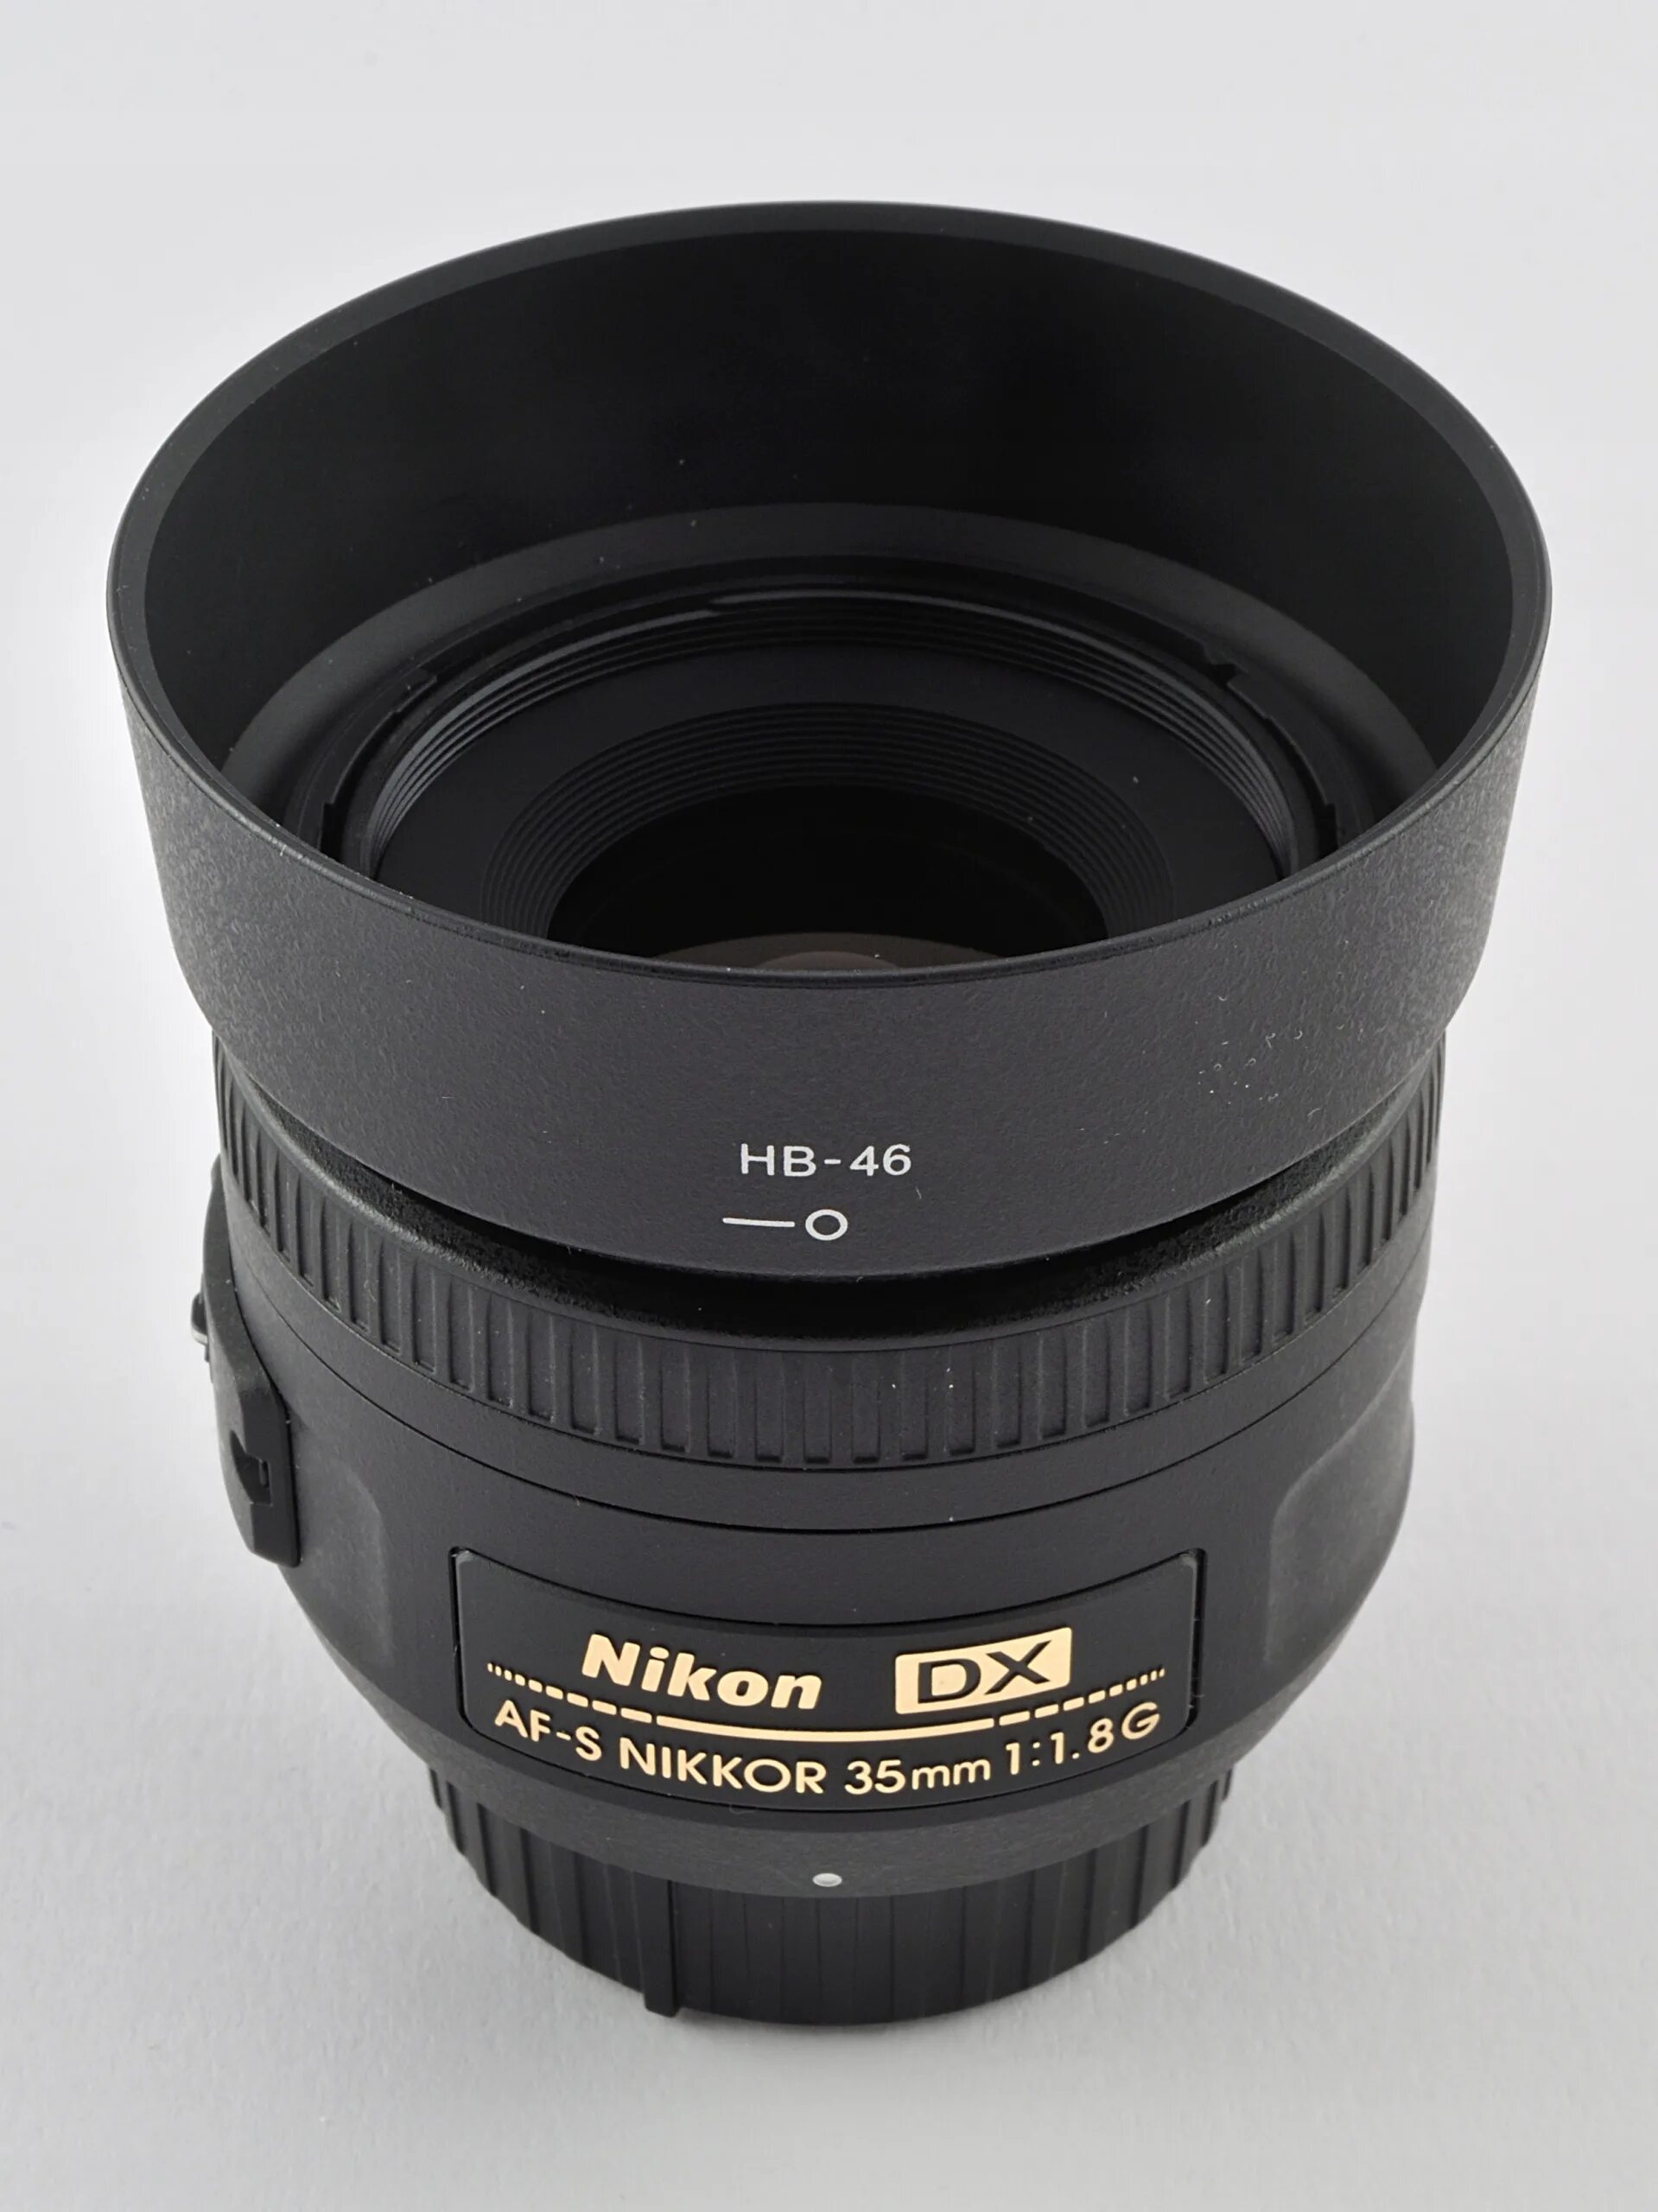 Nikon 35mm f/1.8g af-s DX Nikkor. Nikon 35mm f/1.8. Nikon 35mm 1.8g. Nikon 35mm 1.8g DX. Nikon nikkor 35mm f 1.8 g